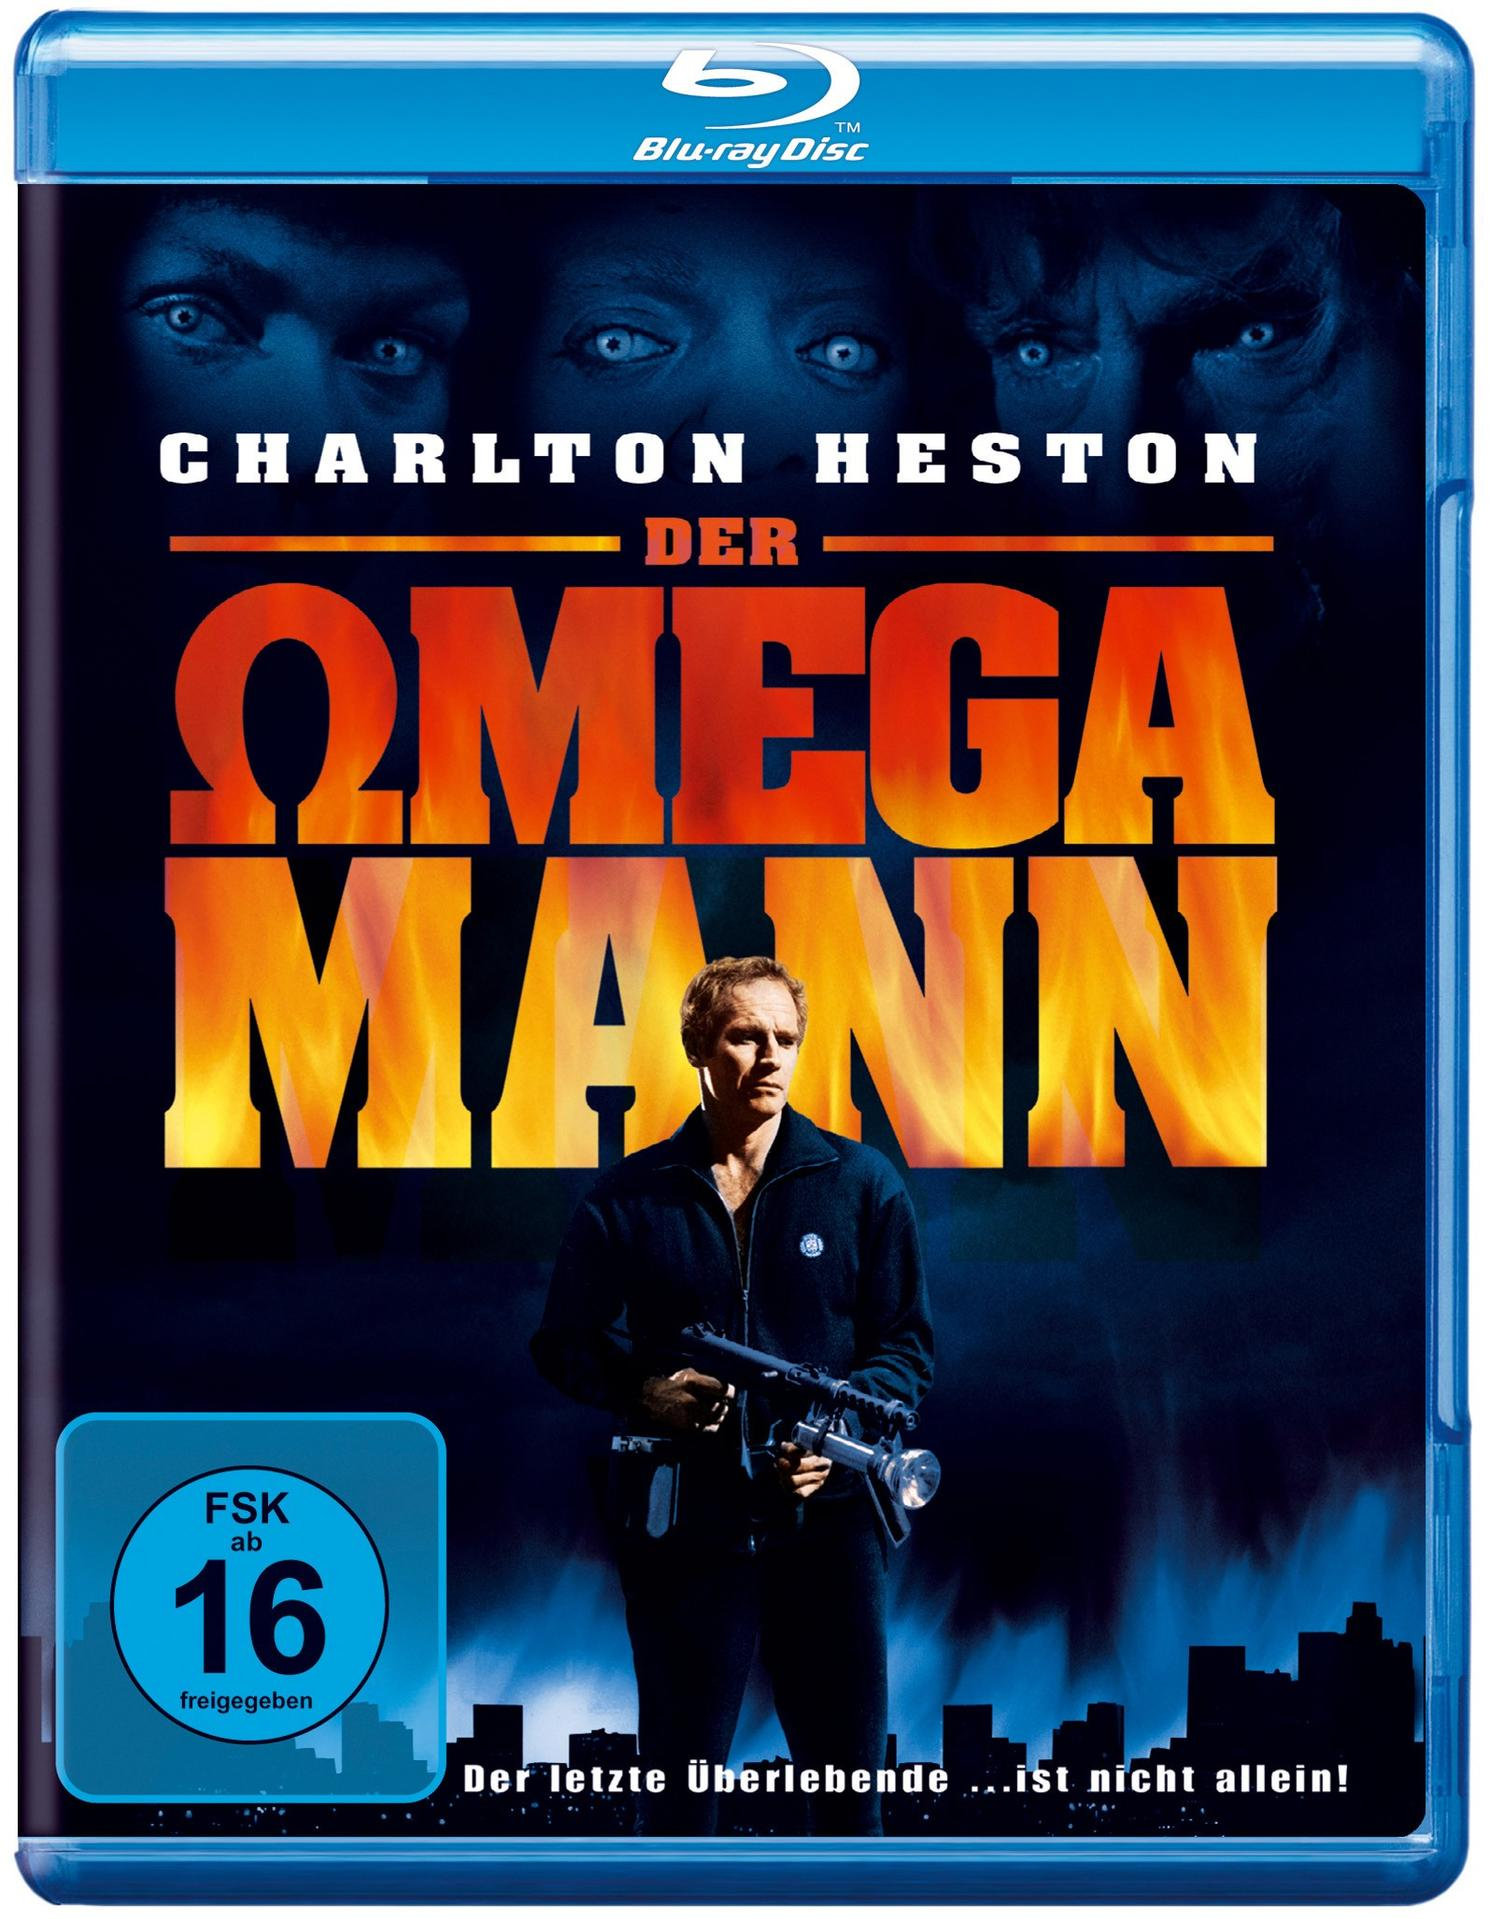 Blu-ray Der Omega-Mann